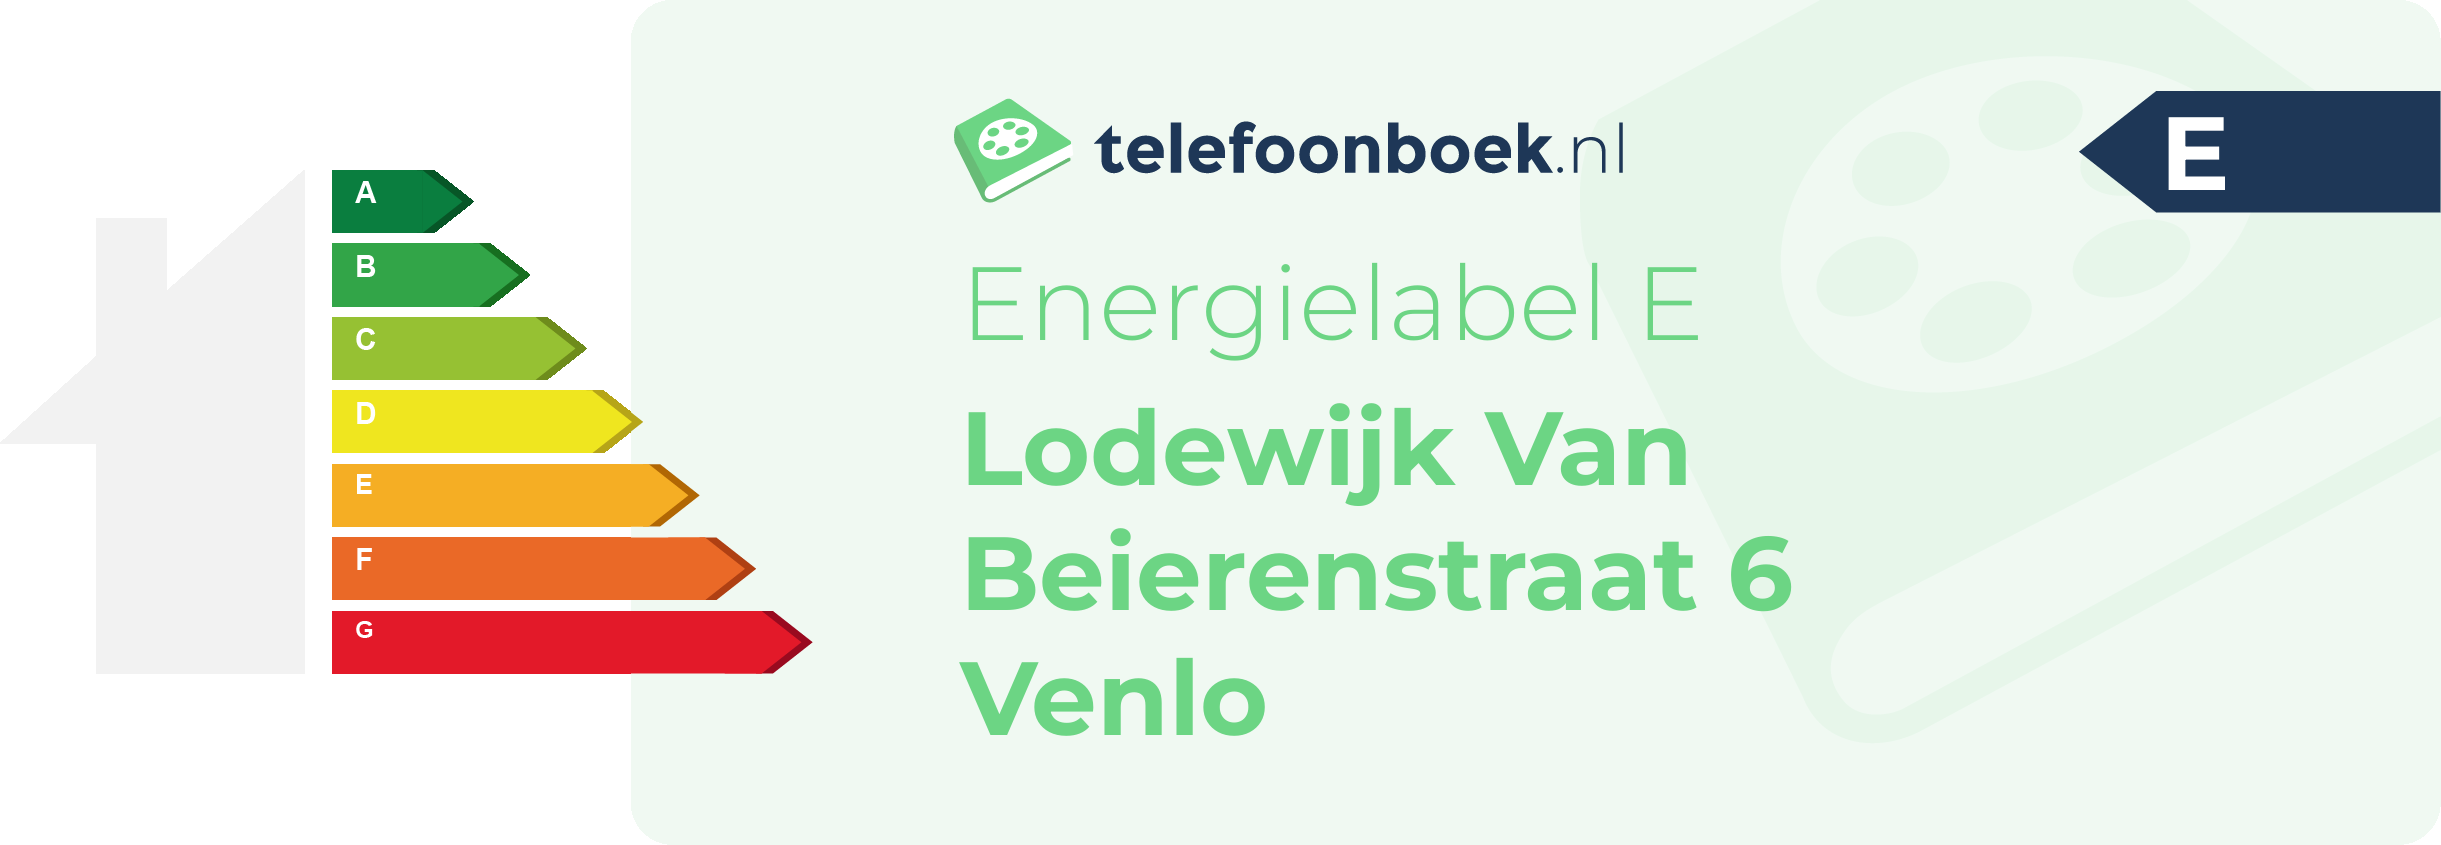 Energielabel Lodewijk Van Beierenstraat 6 Venlo